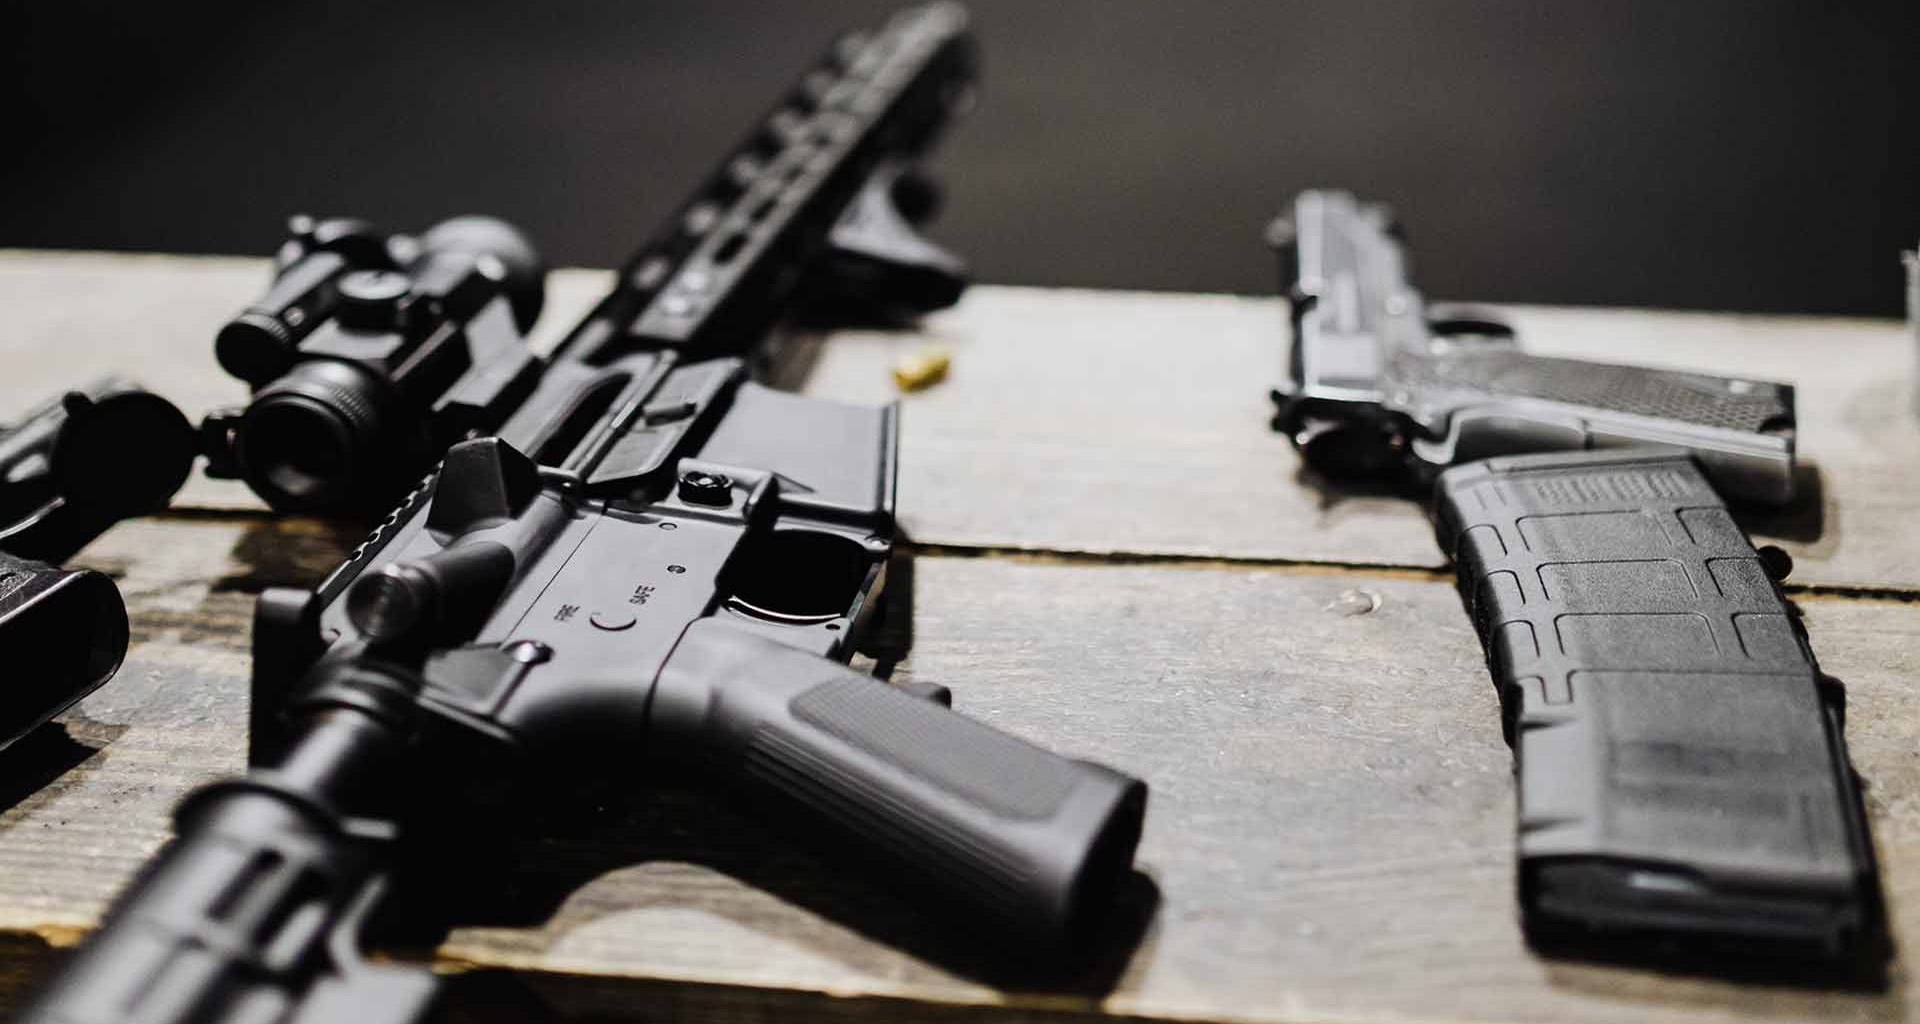 México solicita a Gobierno estadounidense mayor acción contra tráfico de armas